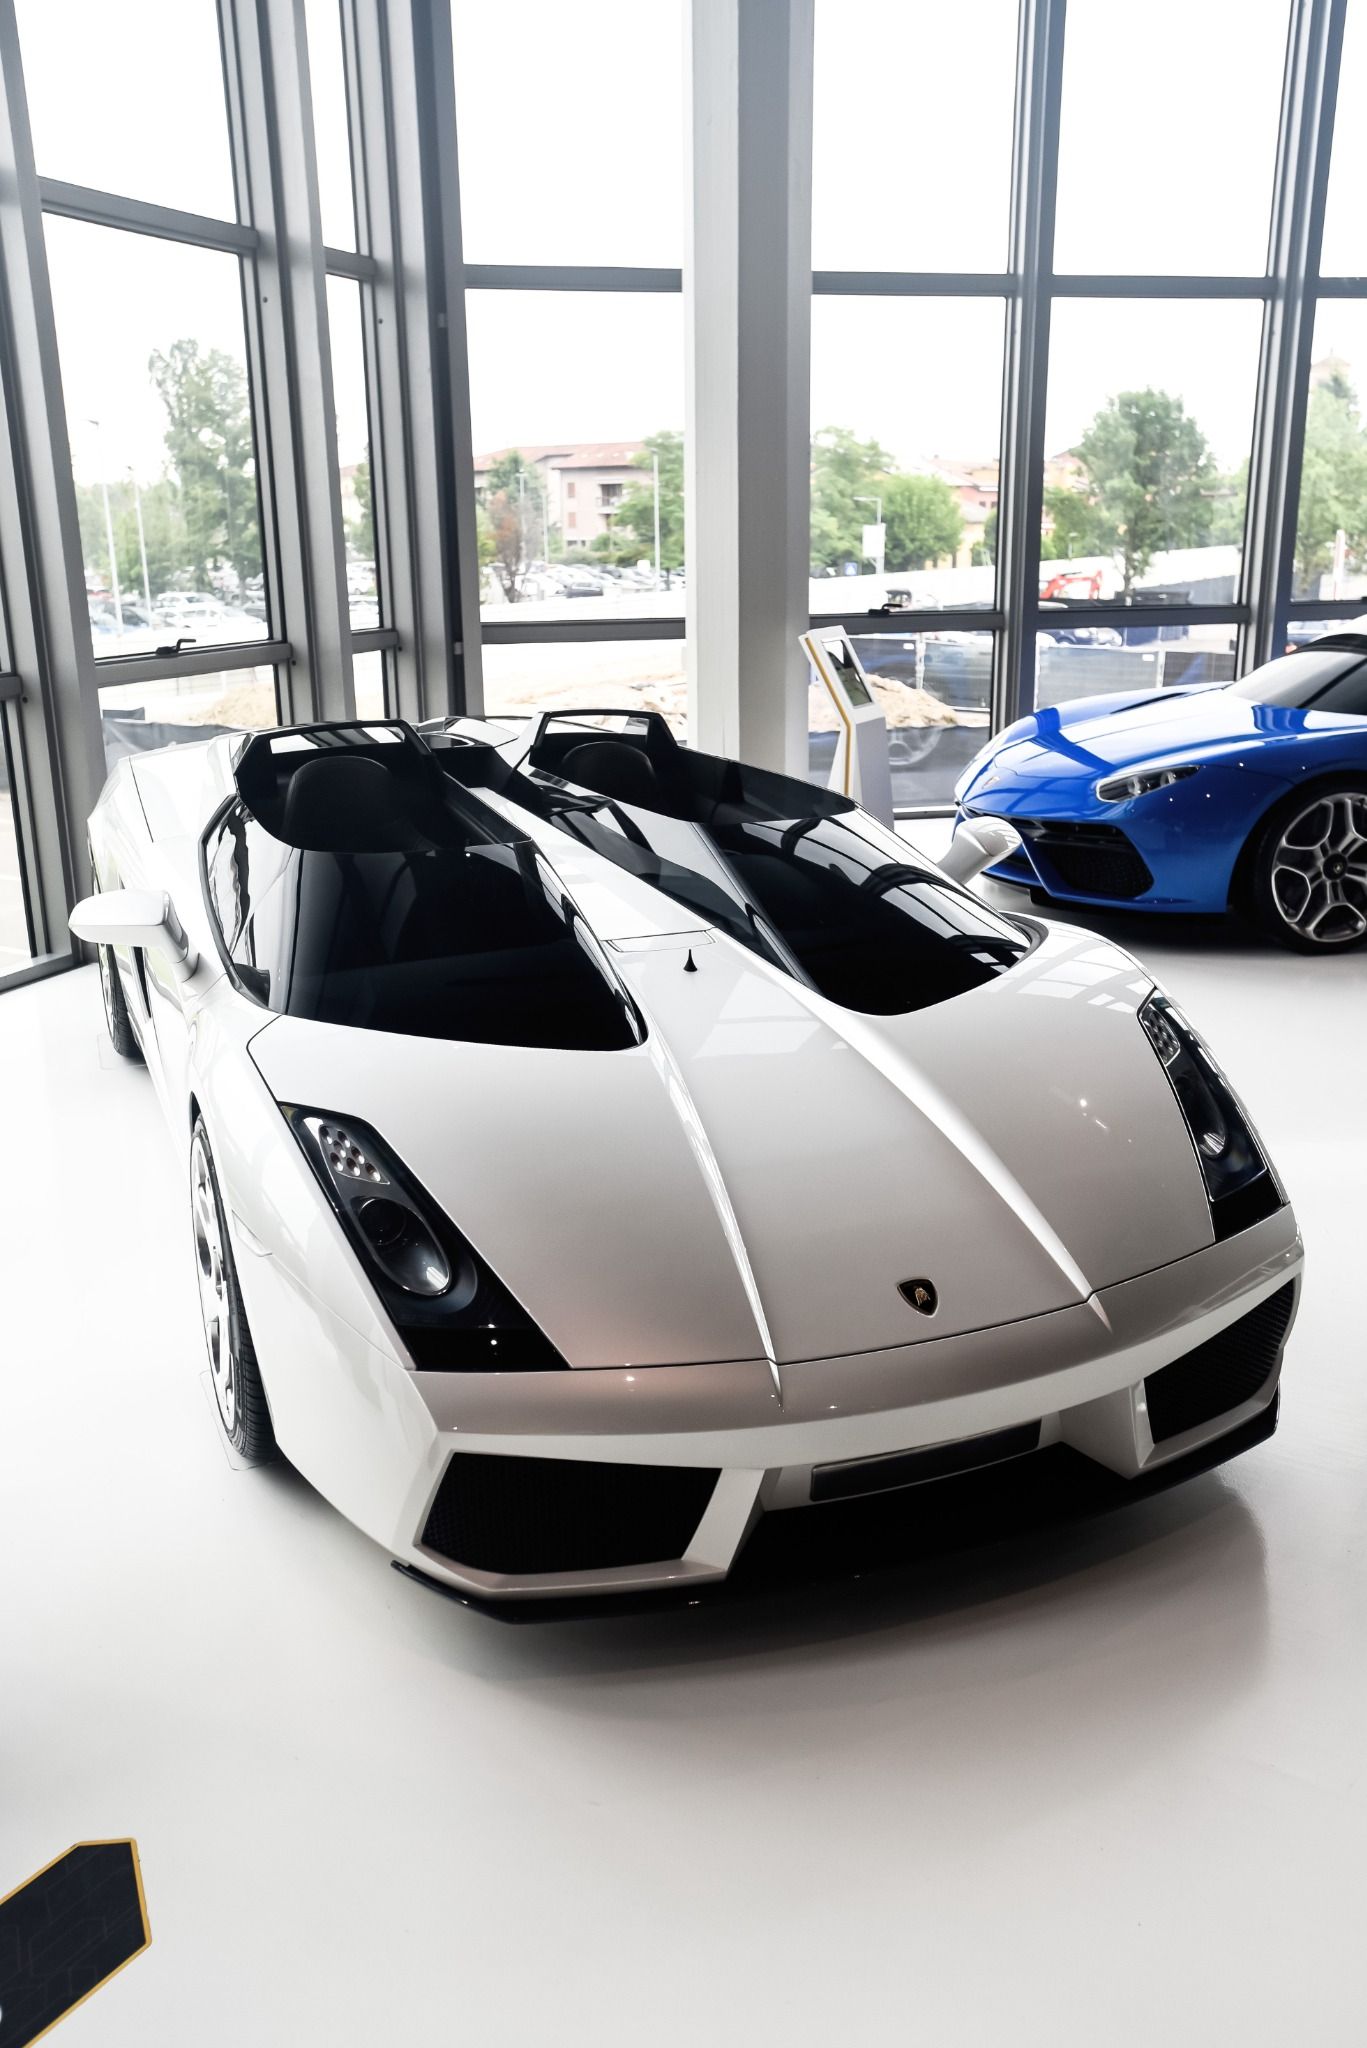 White Lamborghini in front of a big window